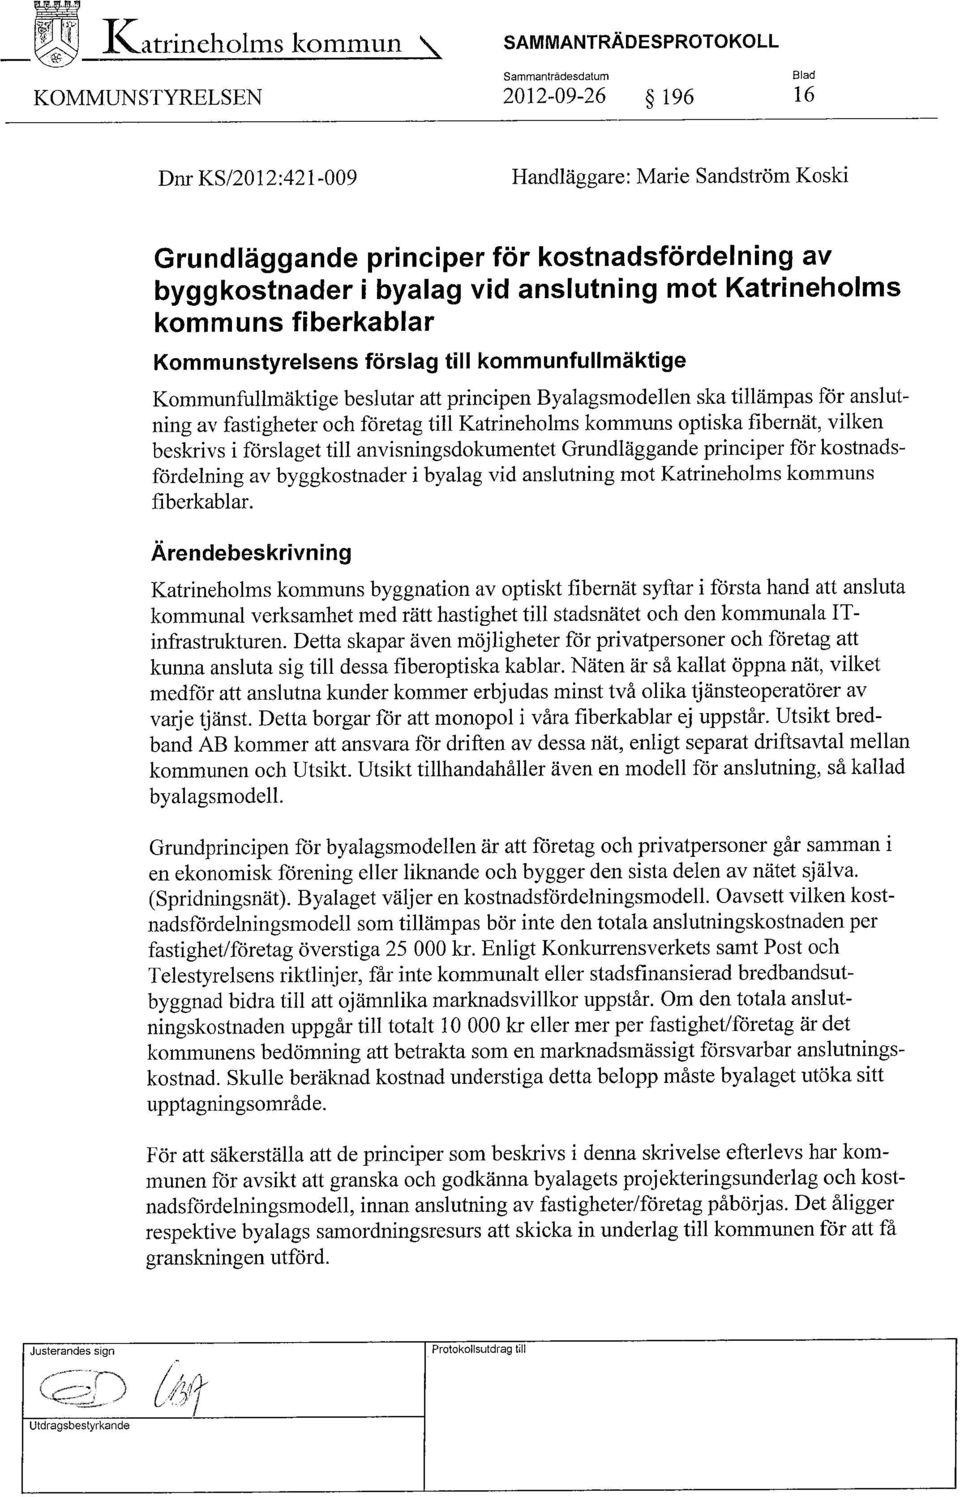 Byalagsmodellen ska tillämpas för anslutning av fastigheter och företag till Katrineholms kommuns optiska fibernät, vilken beskrivs i förslaget till anvisningsdokumentet Grundläggande principer för